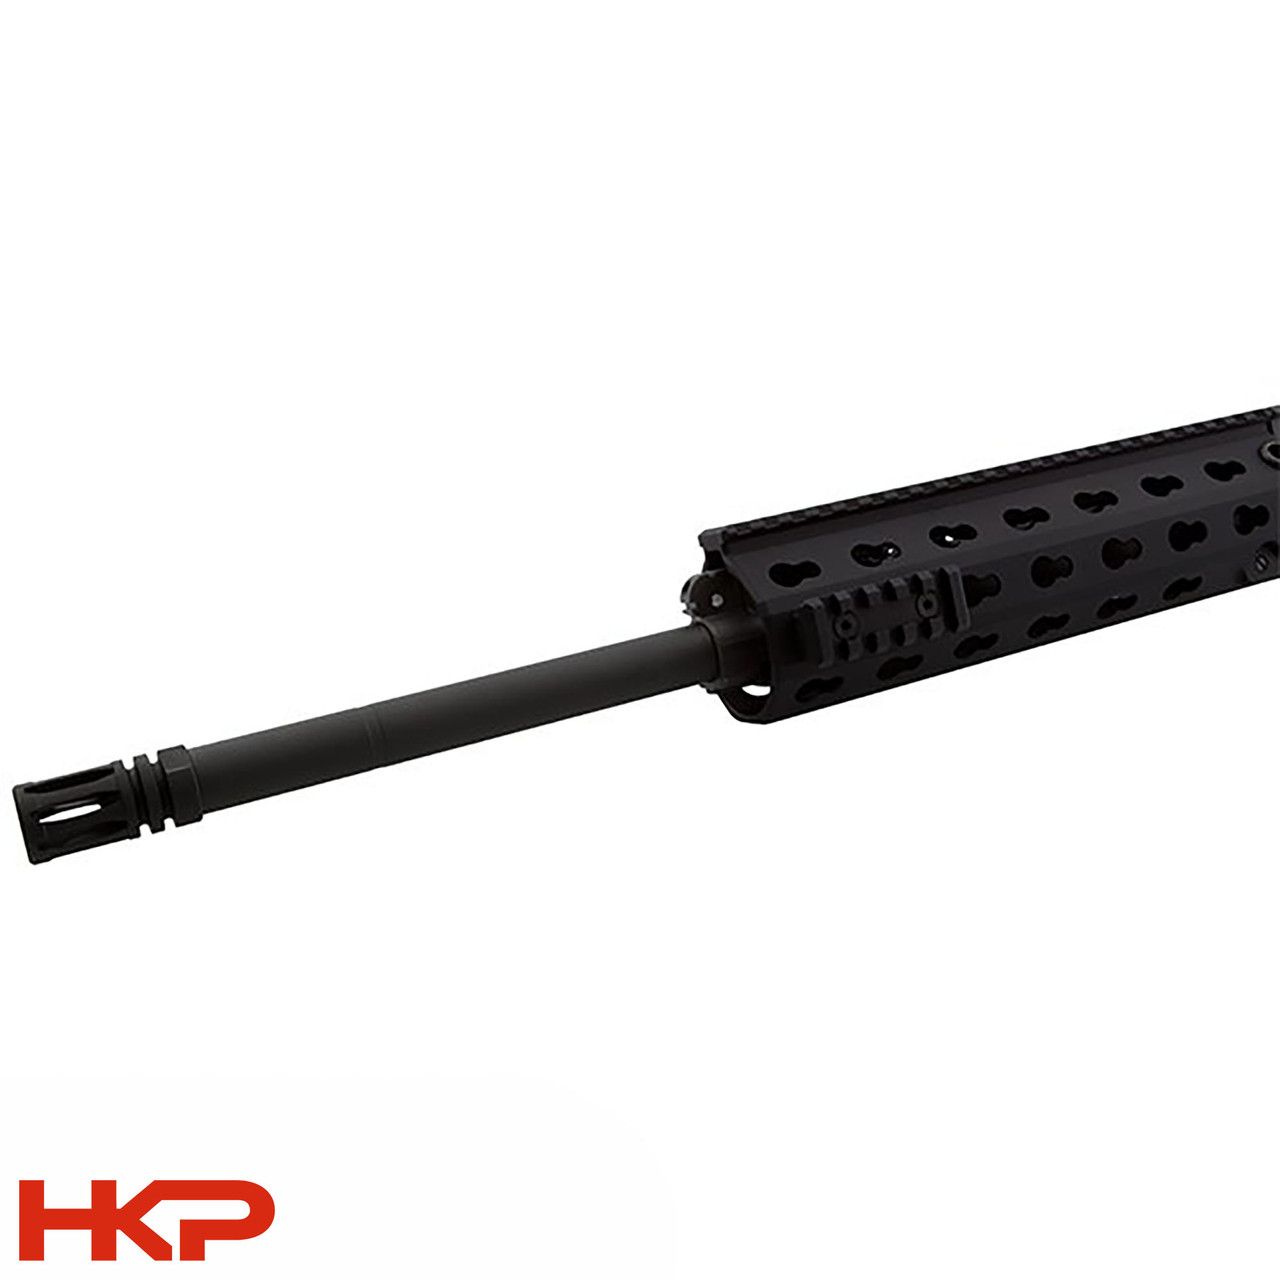 限定販売実物 H&K MR556 MRS ハンドガード Hkey Cerakote HK416 トレポン GBB FDE SYSTEMA PTW パーツ